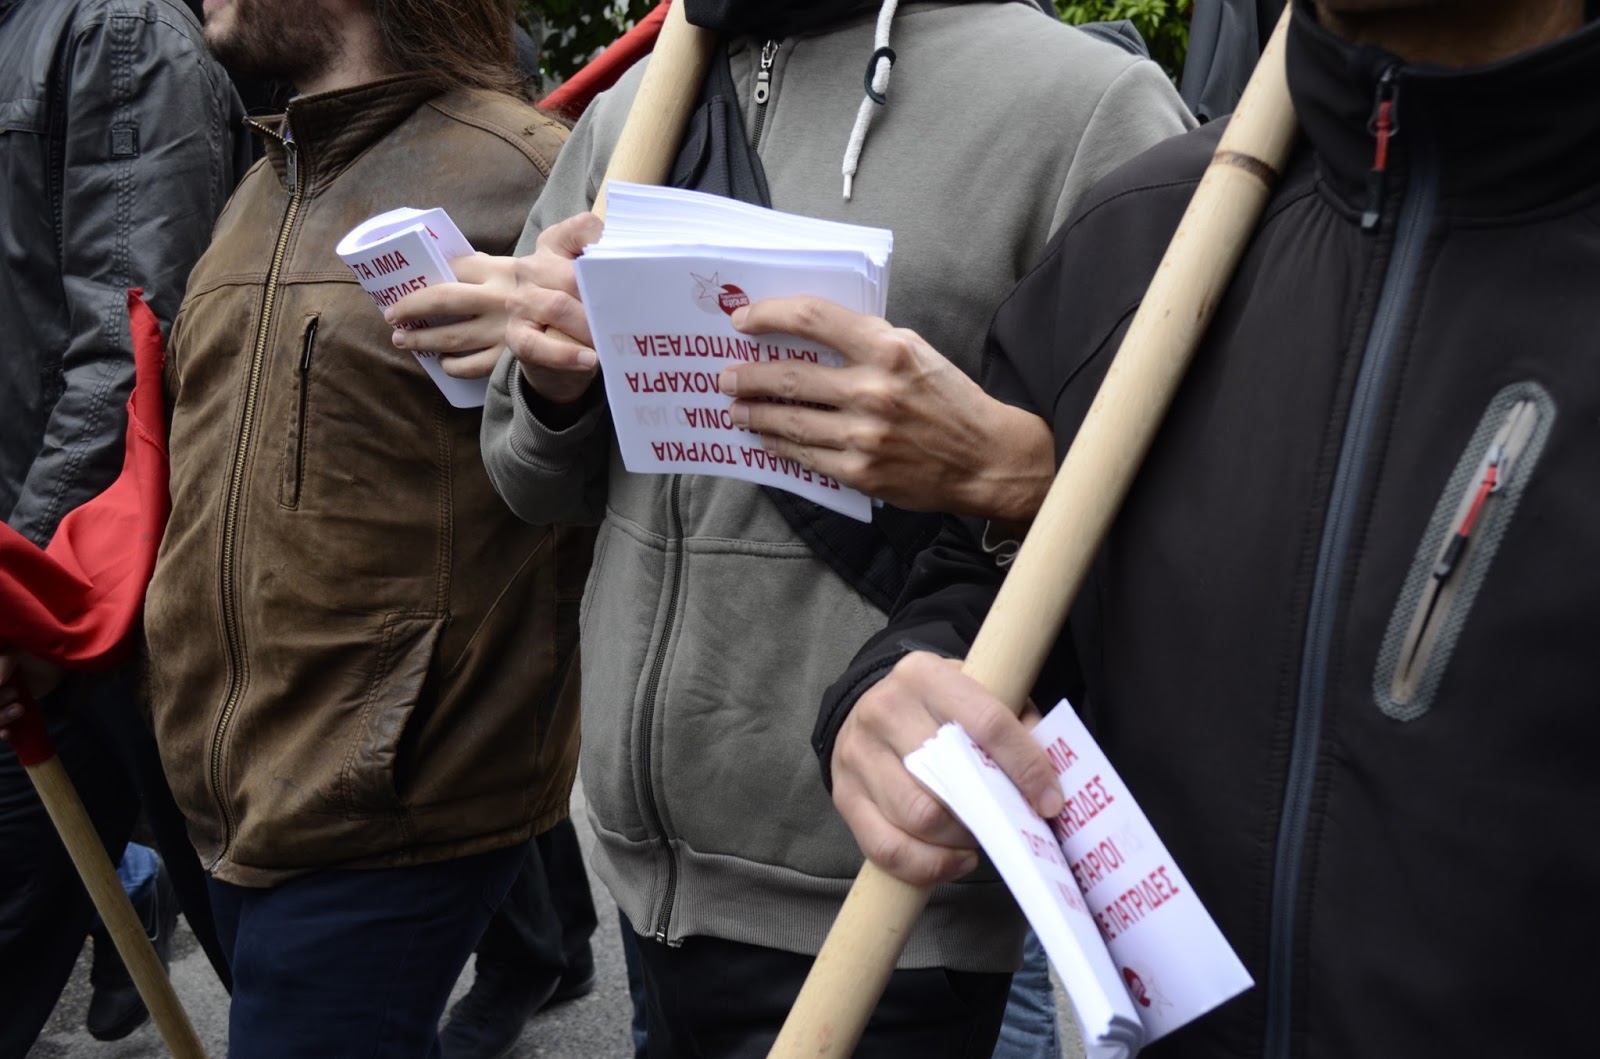 Οι εθνικές ιδέες γεννούν νεκροταφεία / Antifa διαδήλωση στόμα με στόμα από το antifa community / Κουκάκι